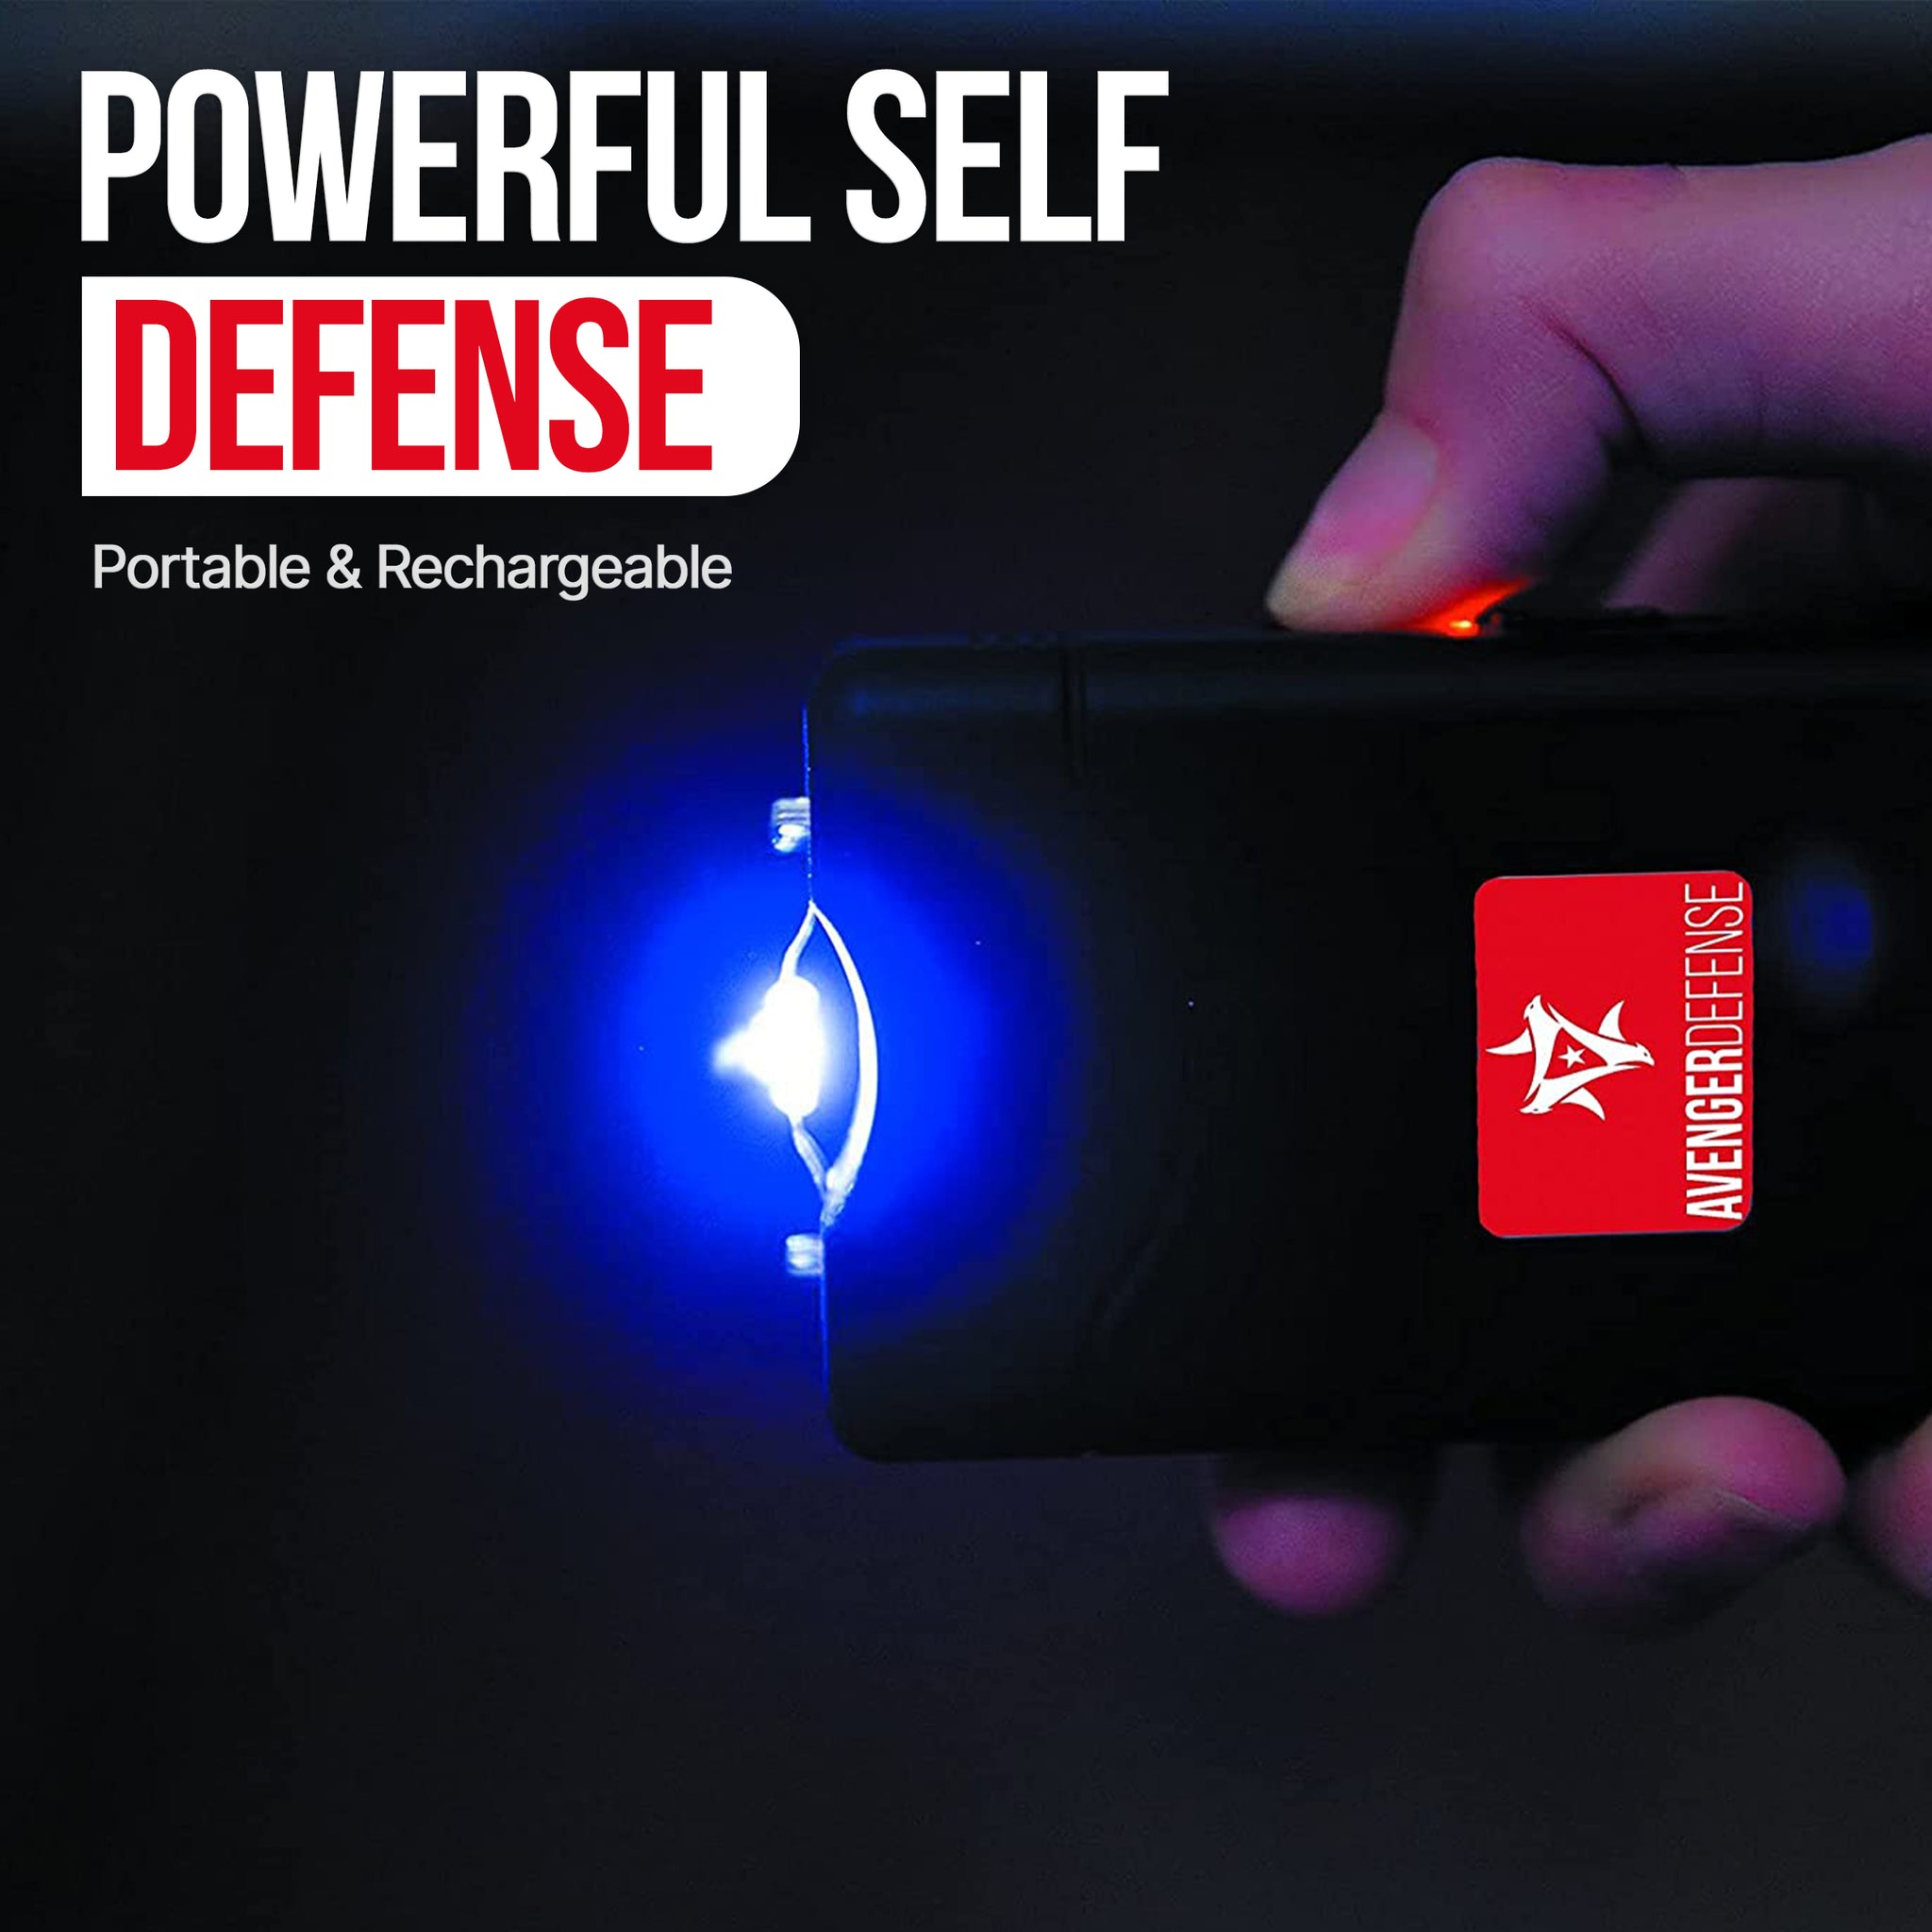  Avenger Defense Stun Gun for Self Defense with LED